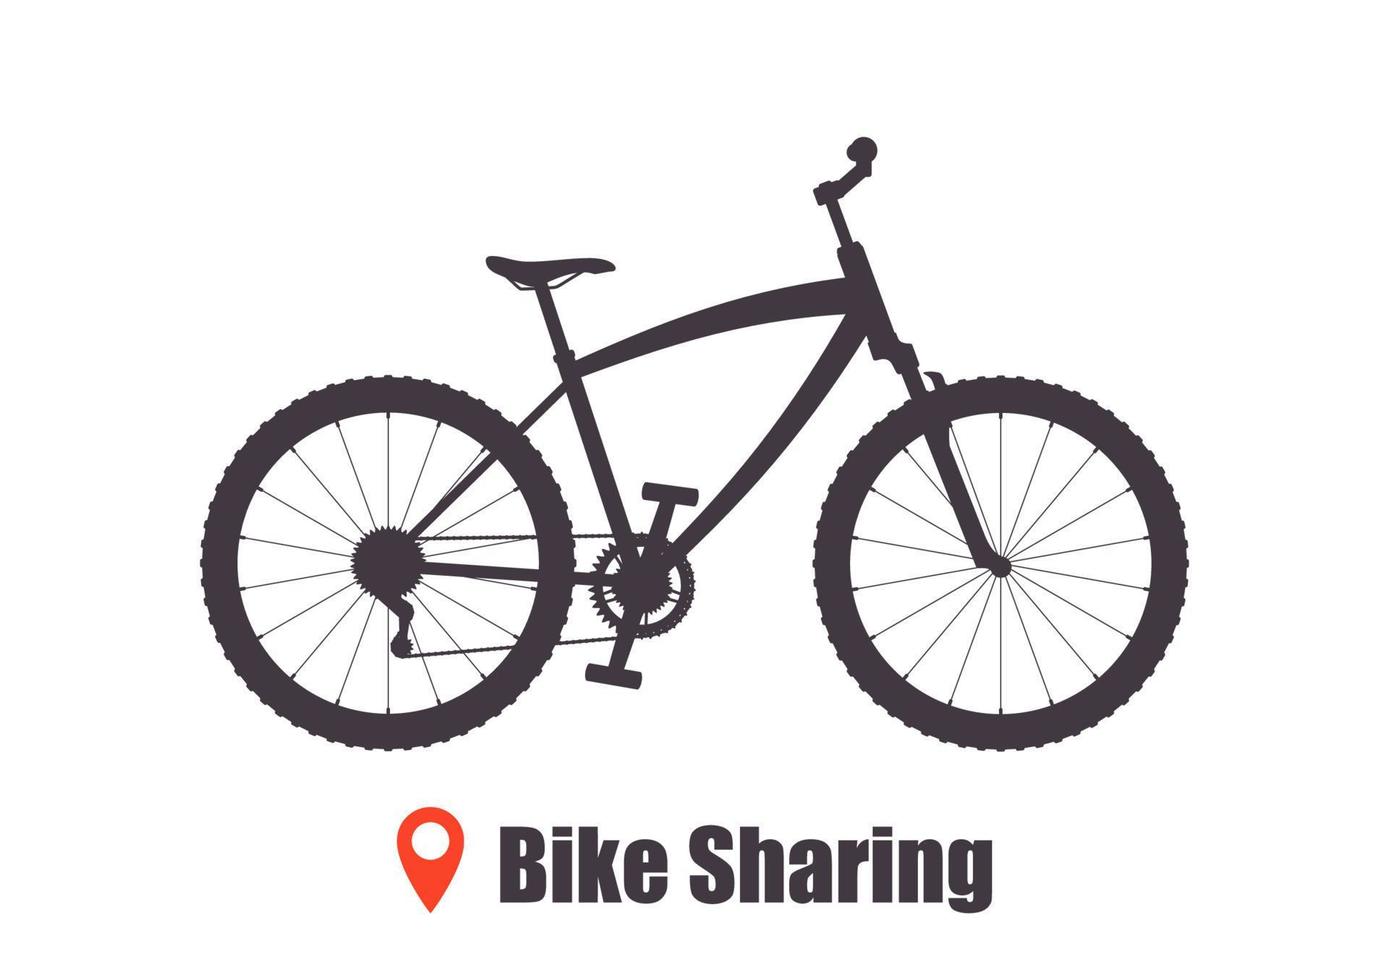 modernes Stadt- oder Mountainbike für Bike-Sharing-Service. Sportfahrrad mit mehreren Geschwindigkeiten für Erwachsene. bike-sharing-konzeptillustration, vektor. vektor